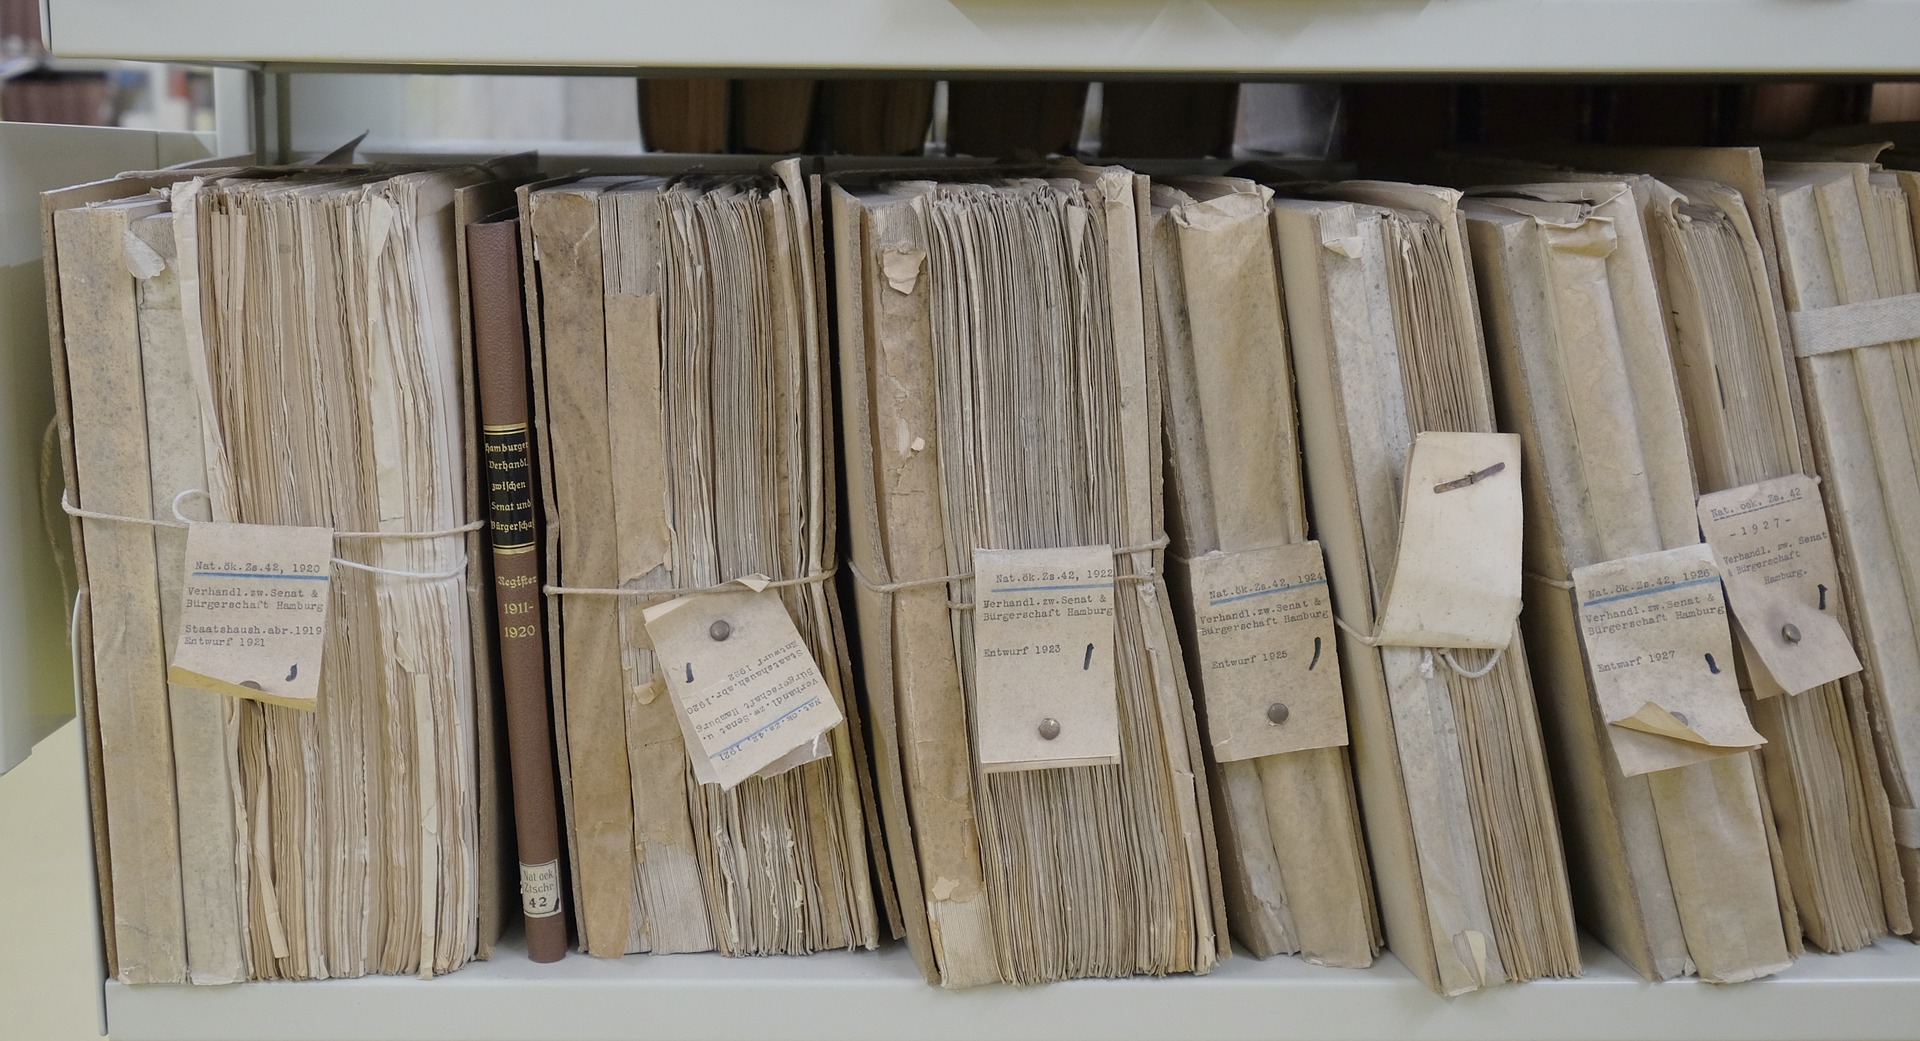 Le fasi di vita: l’archivio di deposito e l’archivio storico